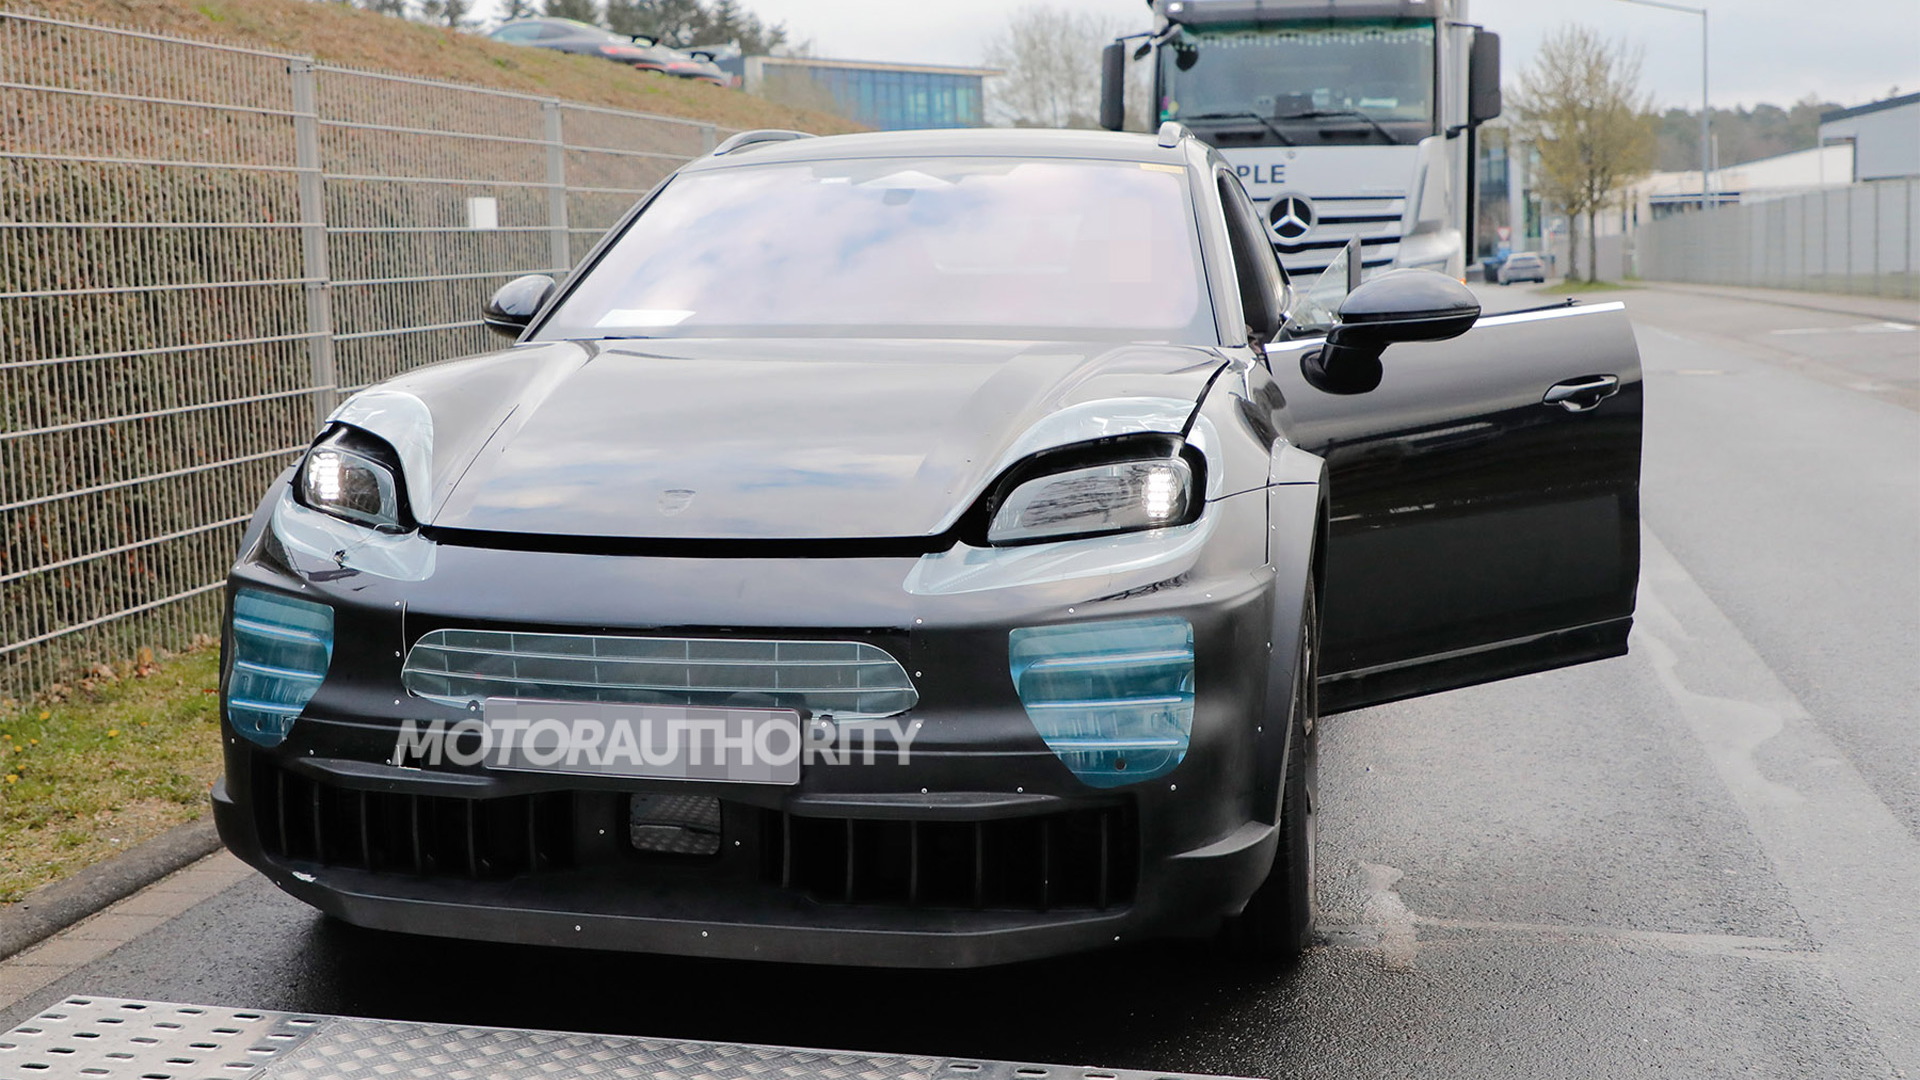 2027 Porsche Cayenne EV test mule spy shots - Photo credit: Baldauf